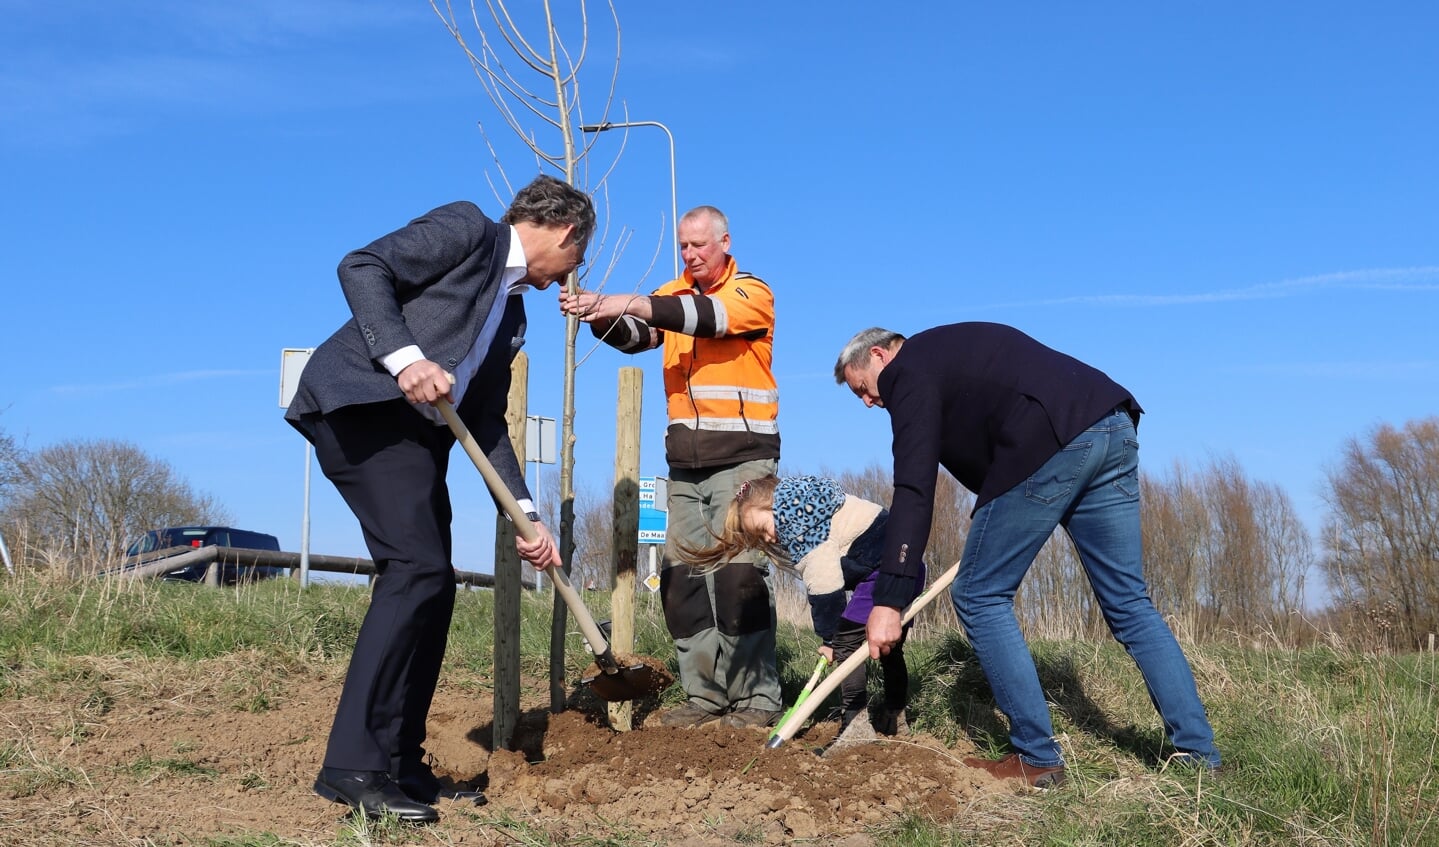 Vrijdagmiddag heeft wethouder René Cruijsen samen met zijn kleindochter Kate een nieuwe bakenboom geplant aan de veerstoep te Appeltern. Wethouder Johan van der Schoot uit de gemeente Oss hielp een handje mee. 